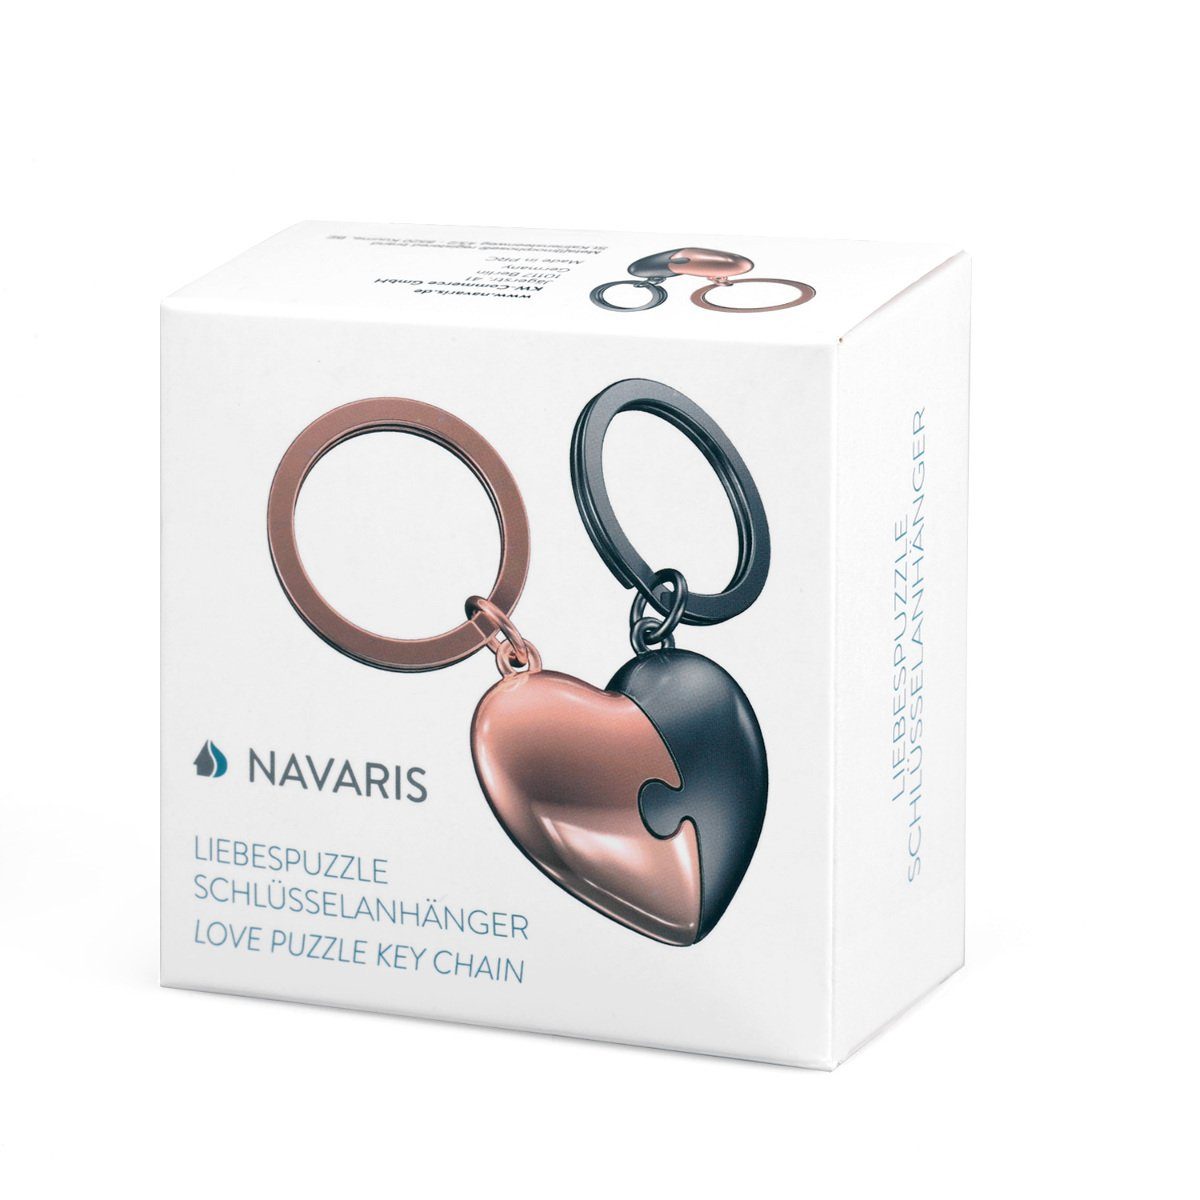 Damen Schlüsselanhänger Navaris Schlüsselanhänger, Liebespuzzle - Anhänger mit hochwertiger Zinklegierung - Keychain für Schlüss